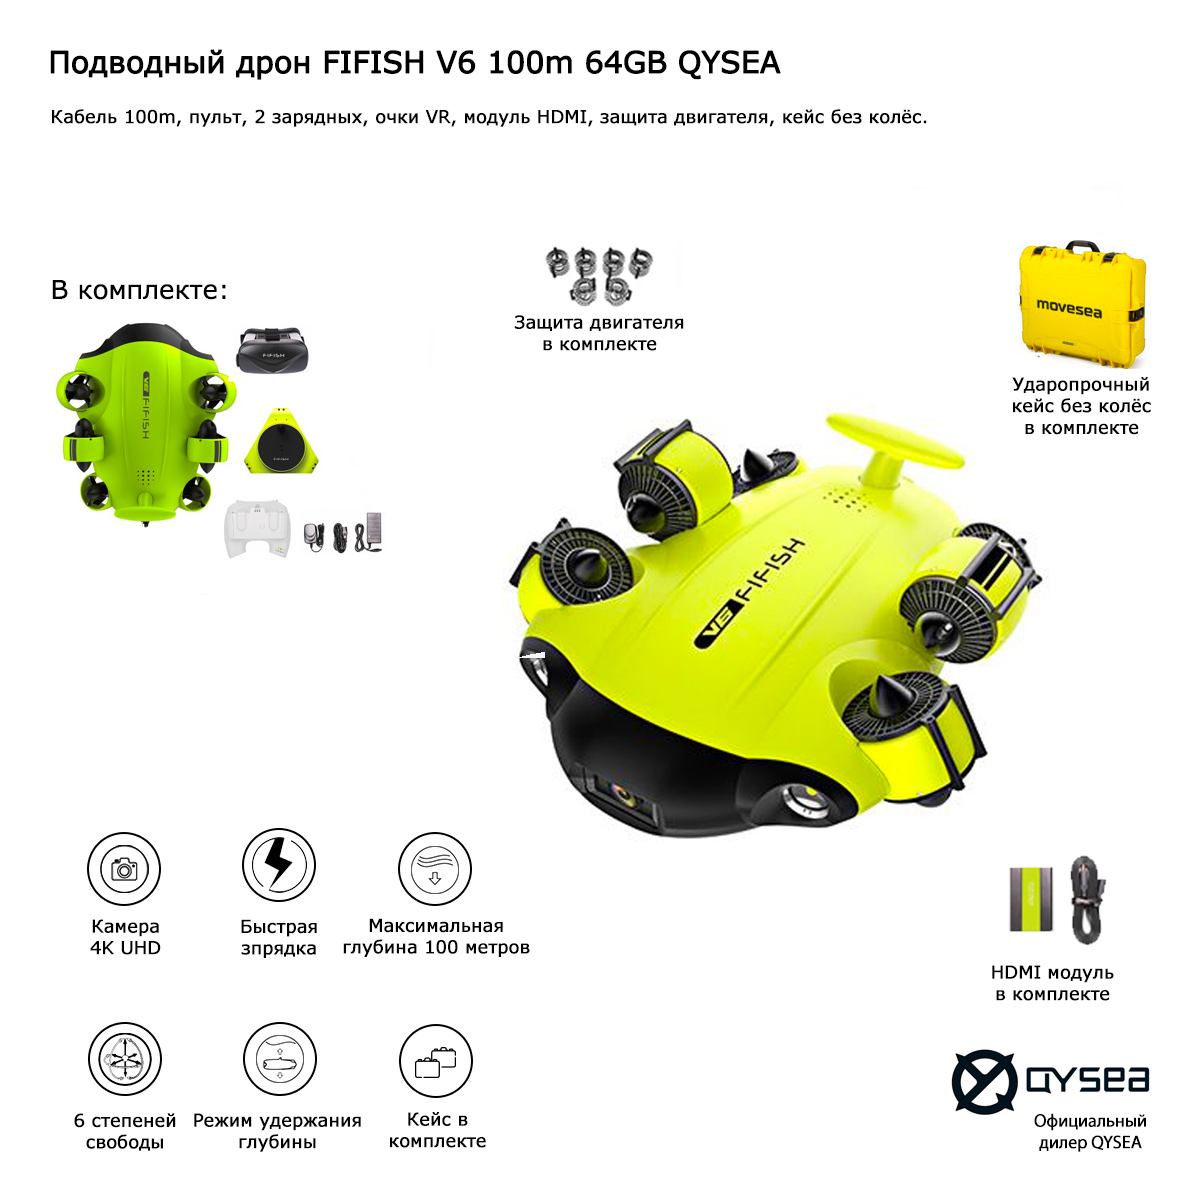 Подводный дрон FIFISH V6 100m 64GB QYSEA (Арт 847463)